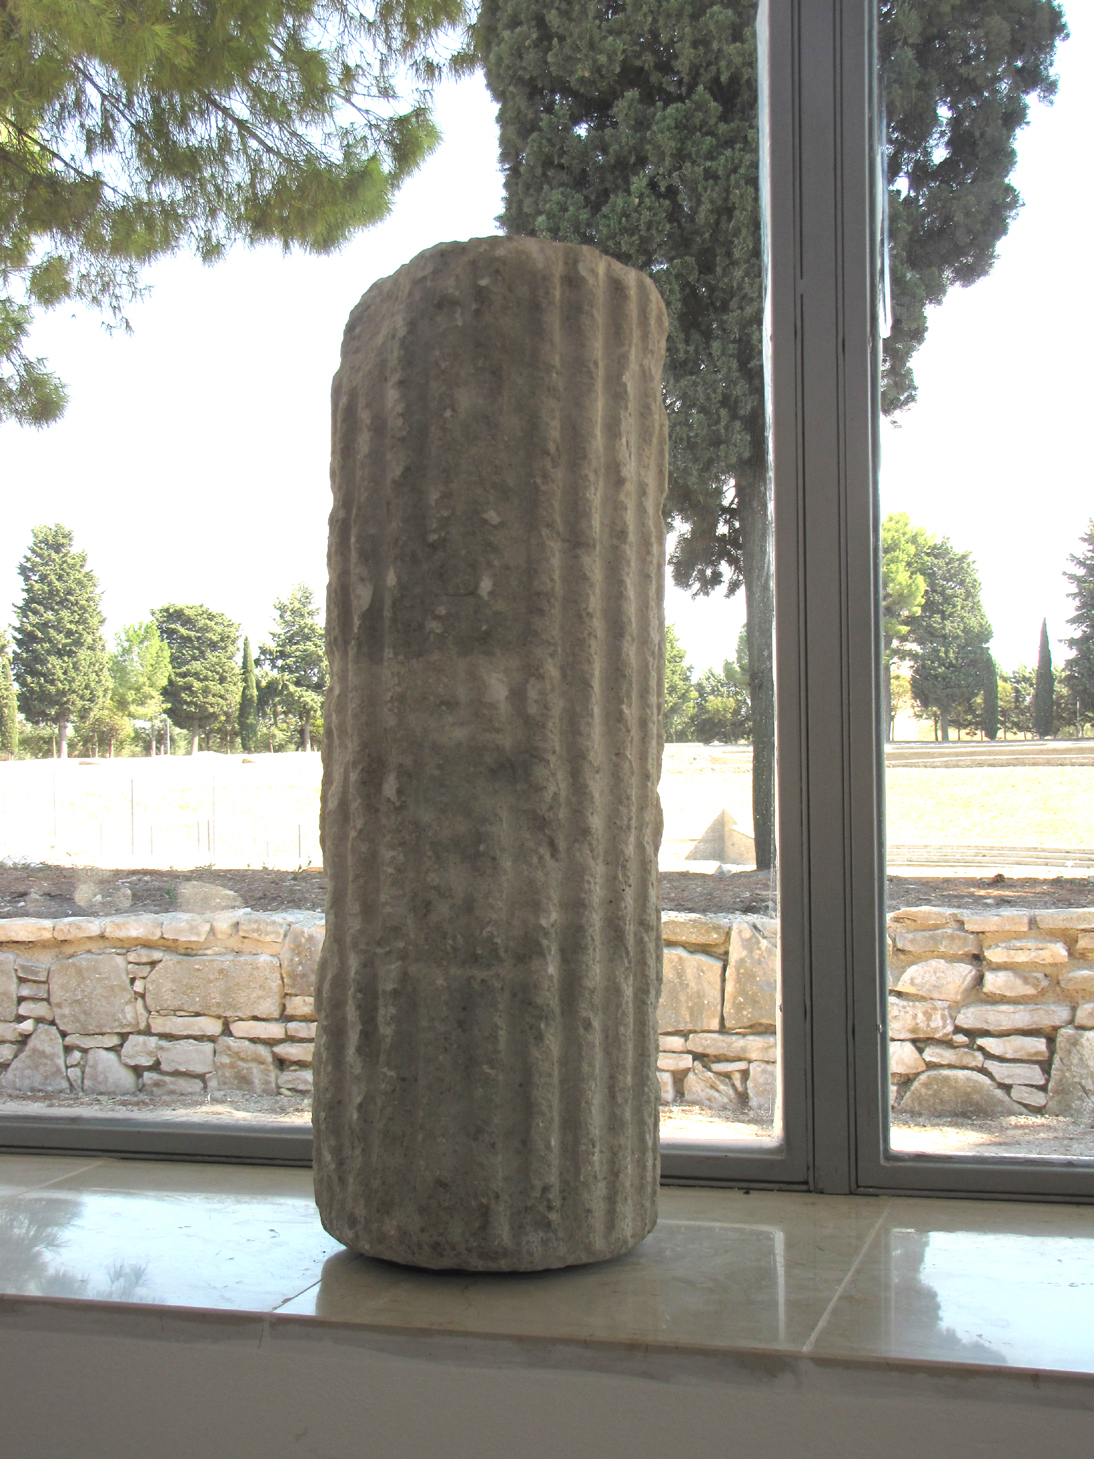 colonna, ionica (Eta' romana)